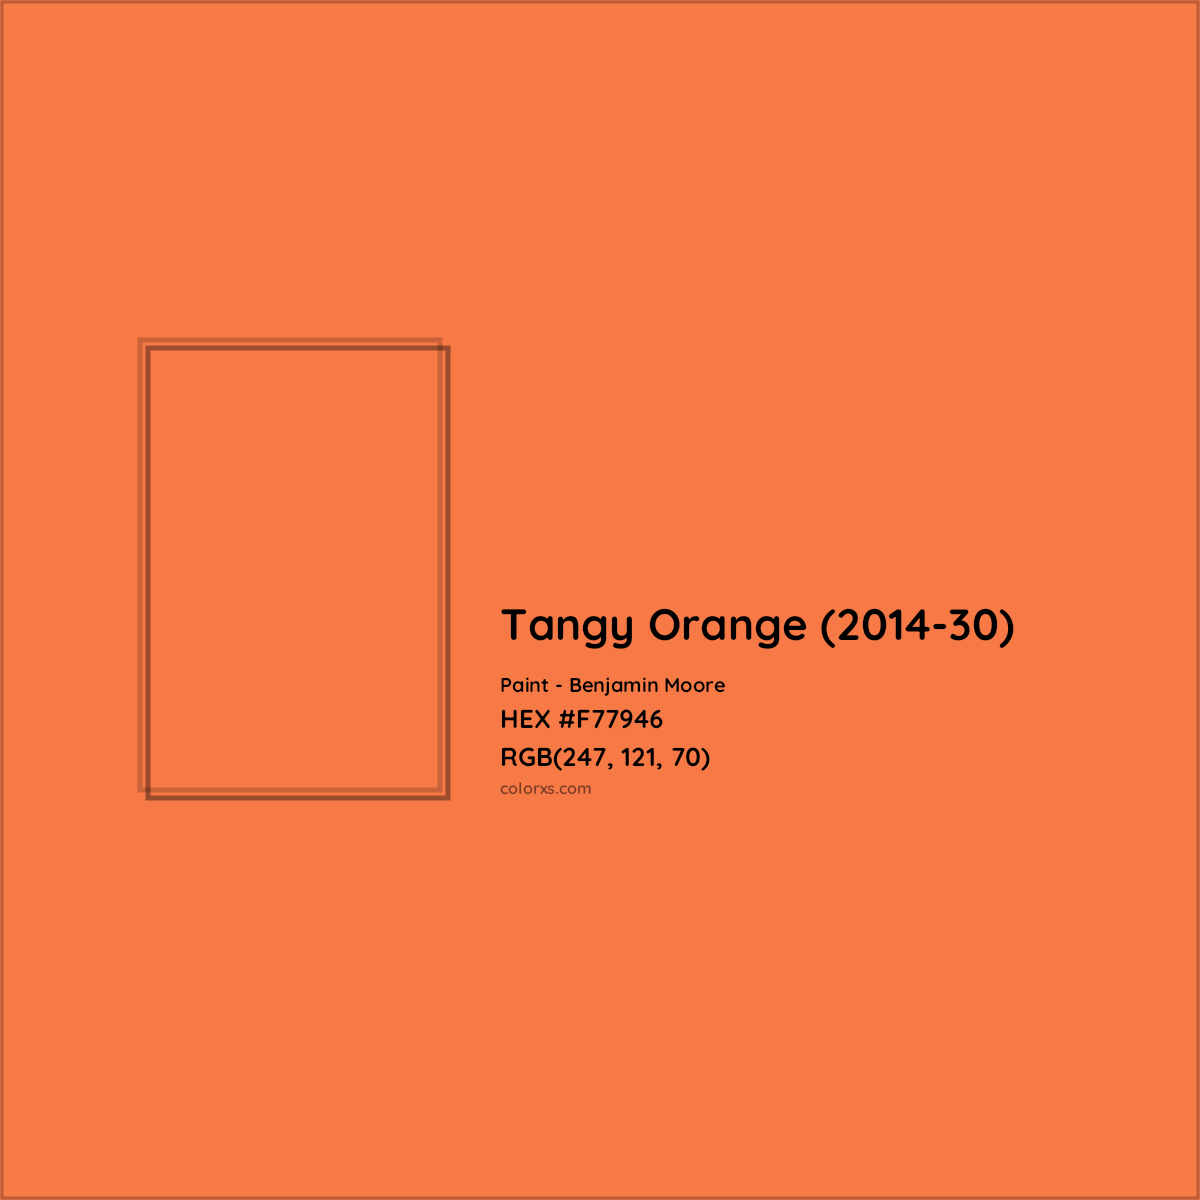 HEX #F77946 Tangy Orange (2014-30) Paint Benjamin Moore - Color Code